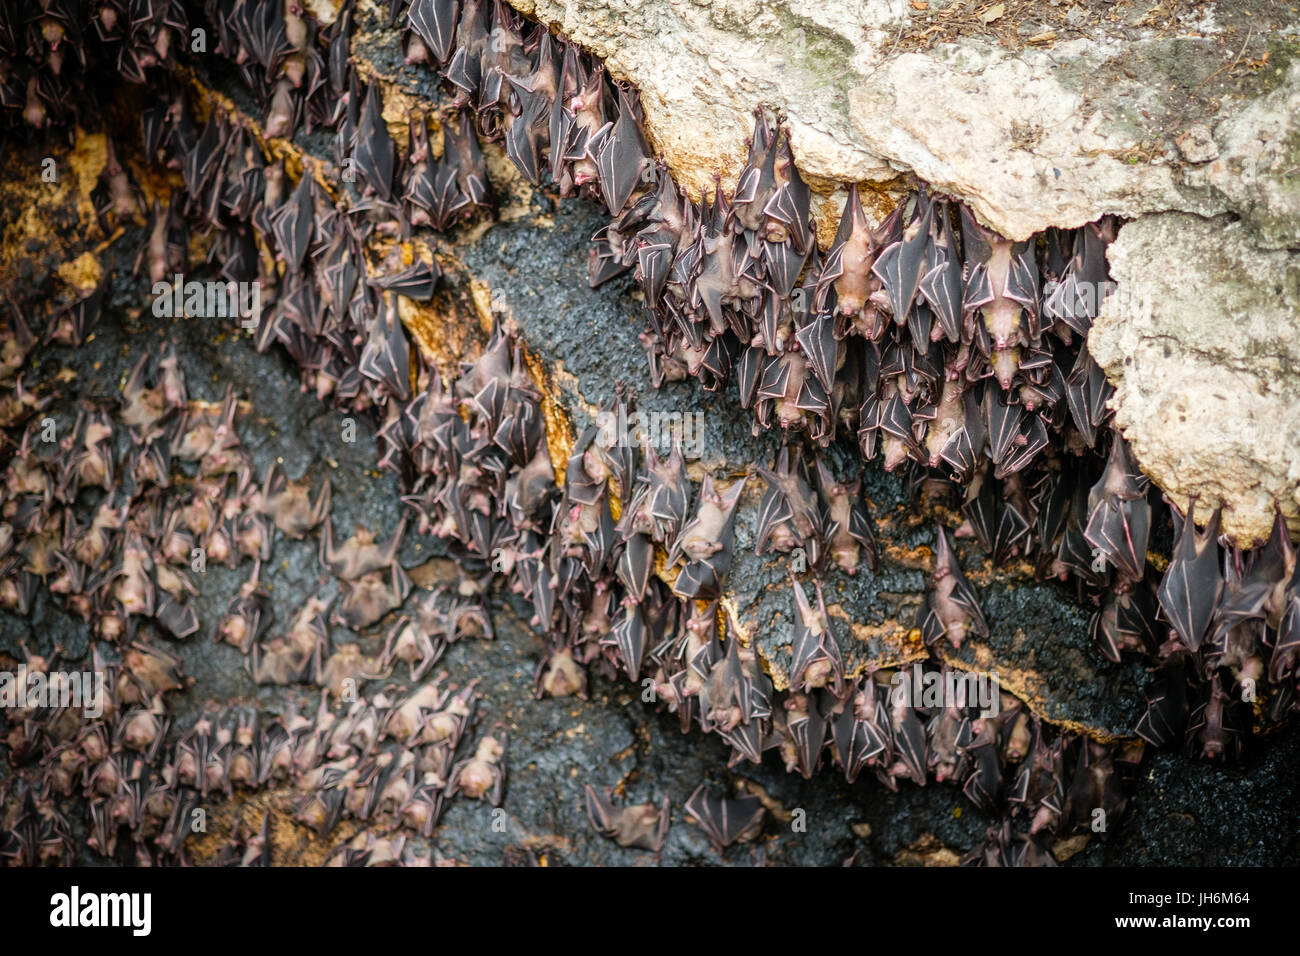 Fruit bats at Monfort bat cave Stock Photo